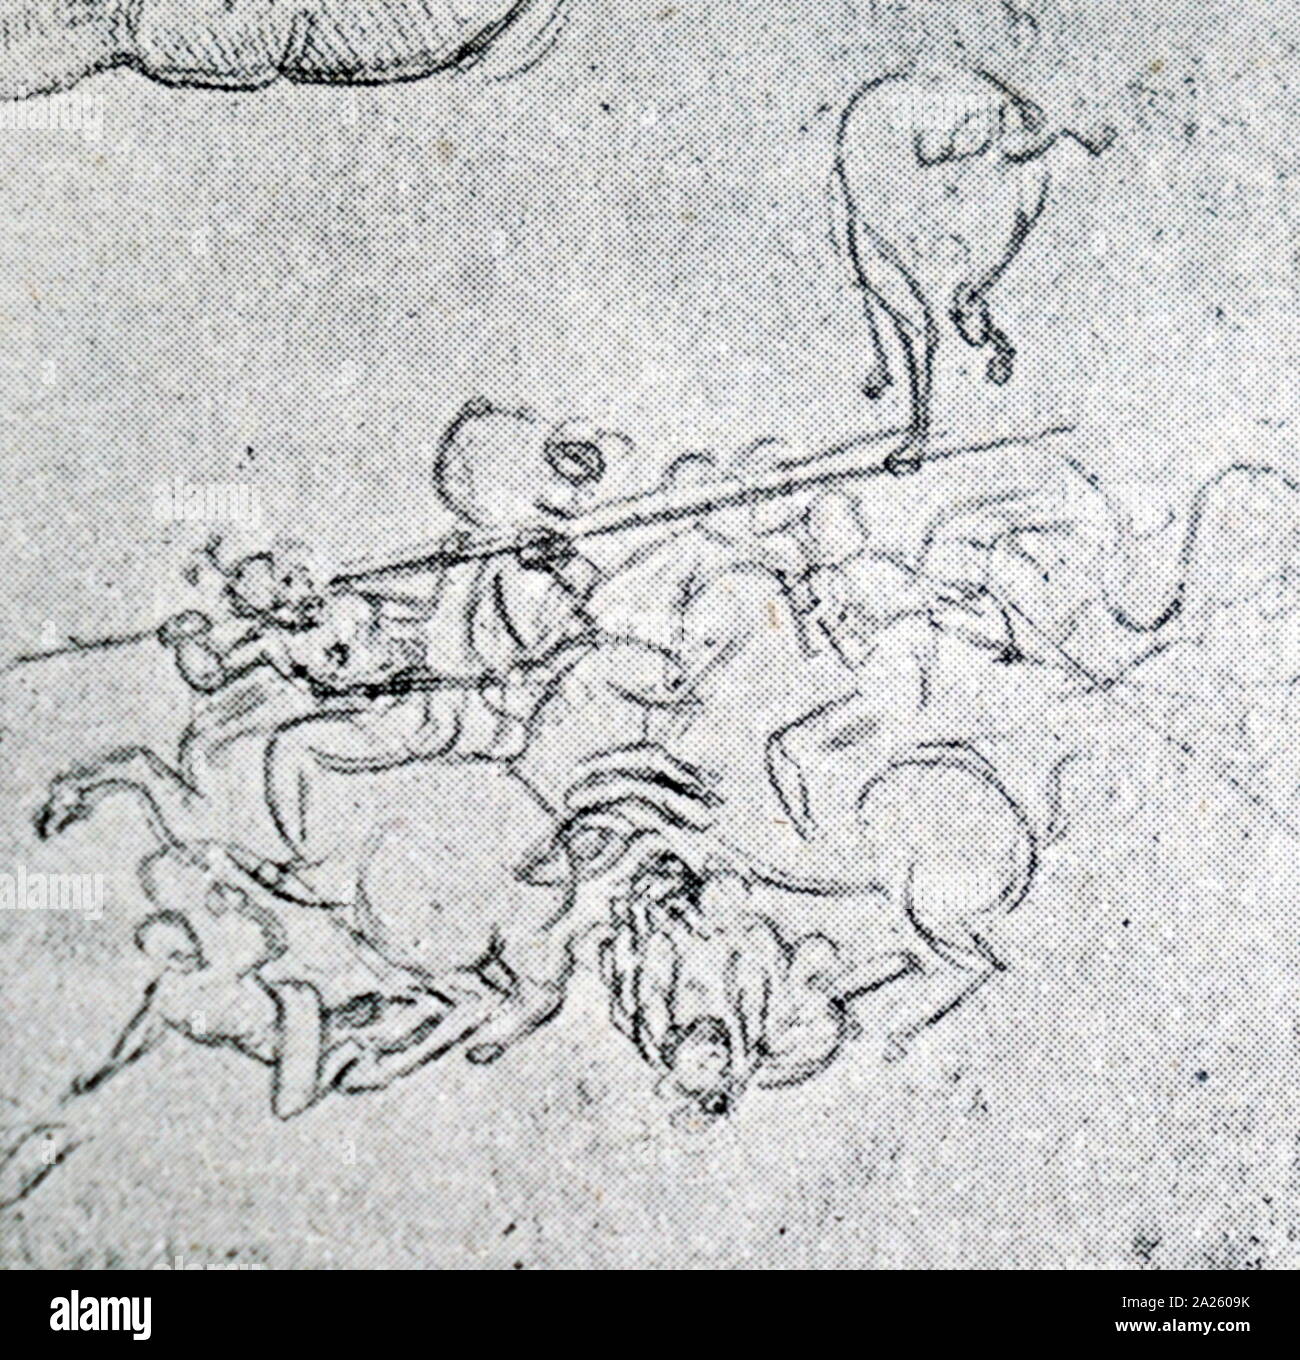 Bozzetto per la Battaglia di Anghiari; cartoon; gesso su carta, 1506, da Raffaello Foto Stock